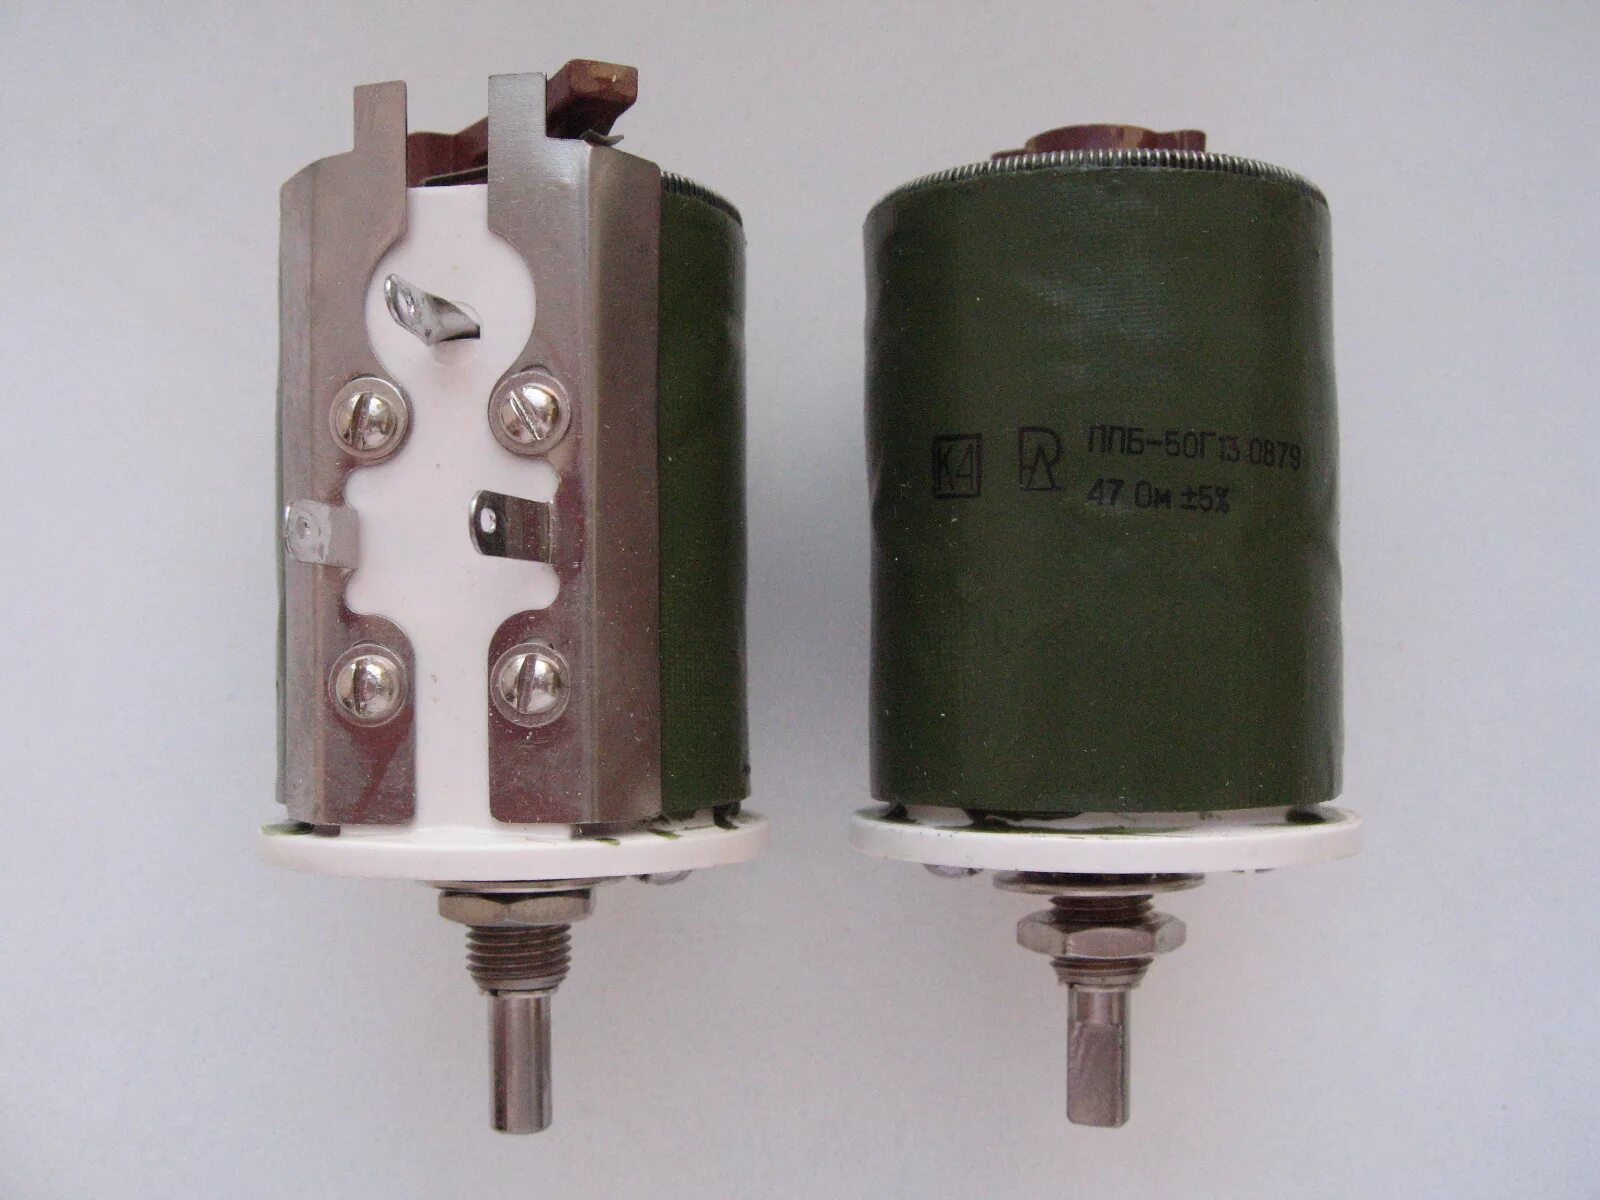 Резистор ППБ-50г. Резистор ППБ-50 2,2 ом. Резистор ППБ-50-47ком. Переменный резистор ППБ-15г13 5 ом.